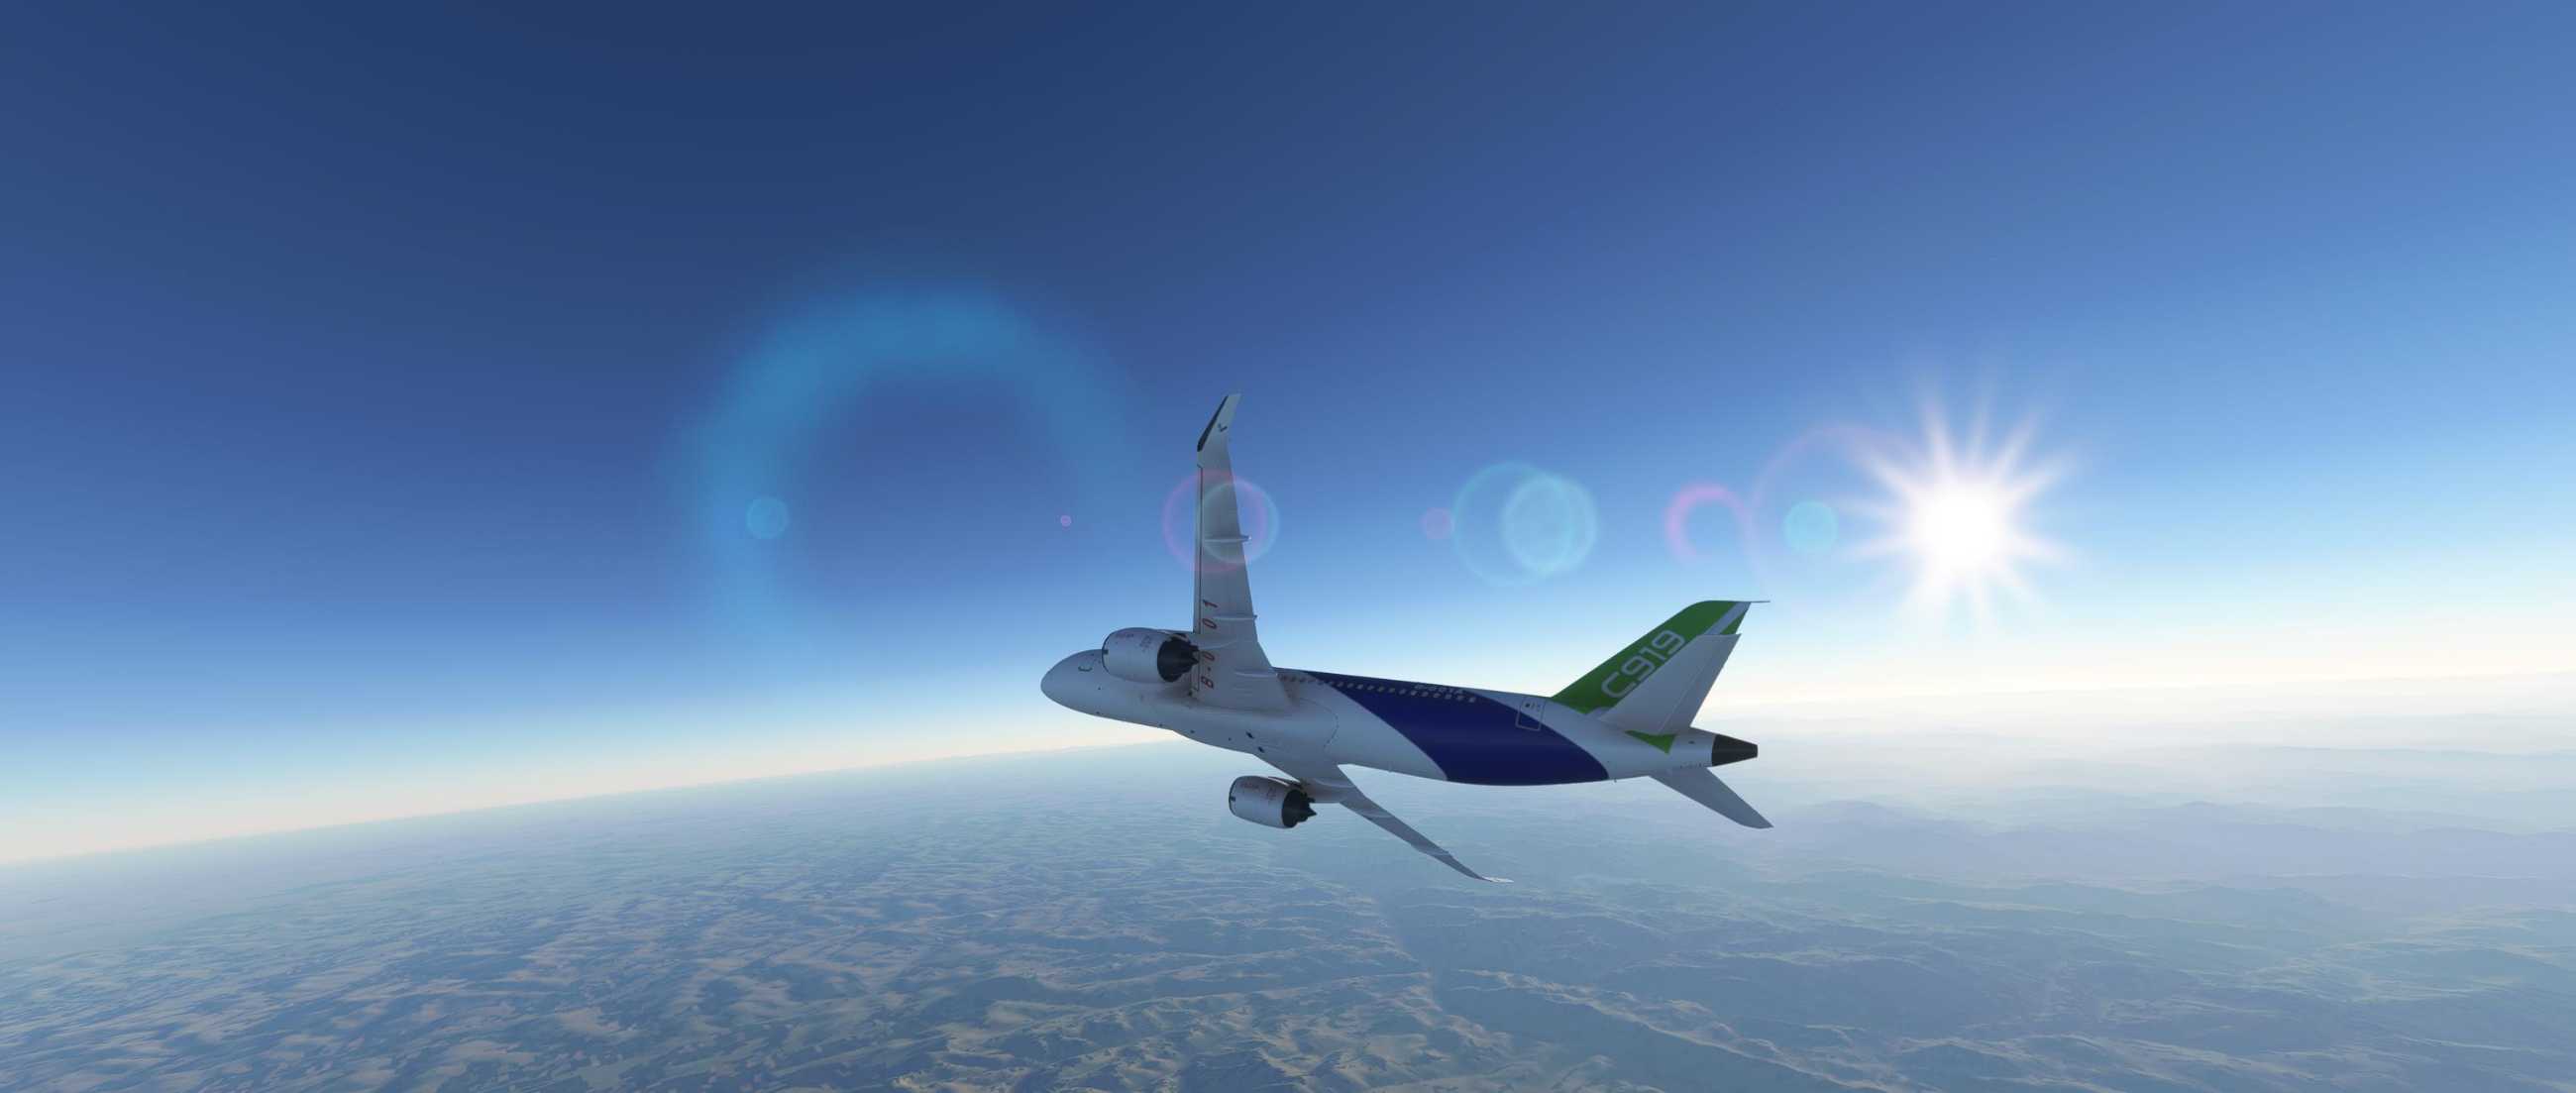 FYCYC-C919 国产大飞机机模 微软模拟飞行演示-2557 